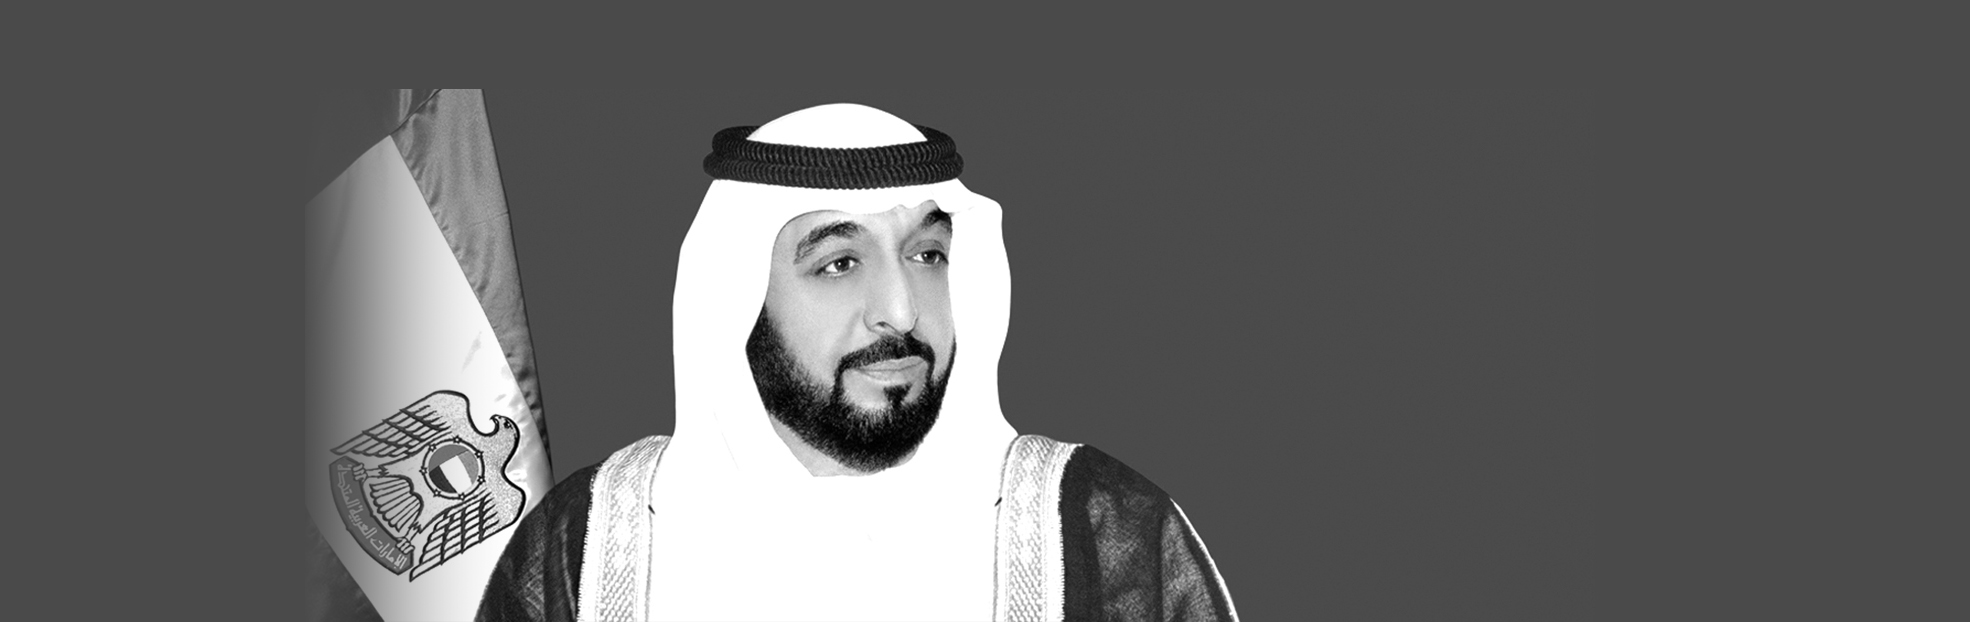 تتقدم جامعة نيويورك أبوظبي بخالص العزاء في وفاة صاحب السمو الشيخ خليفة بن زايد آل نهيان رئيس الدولة.